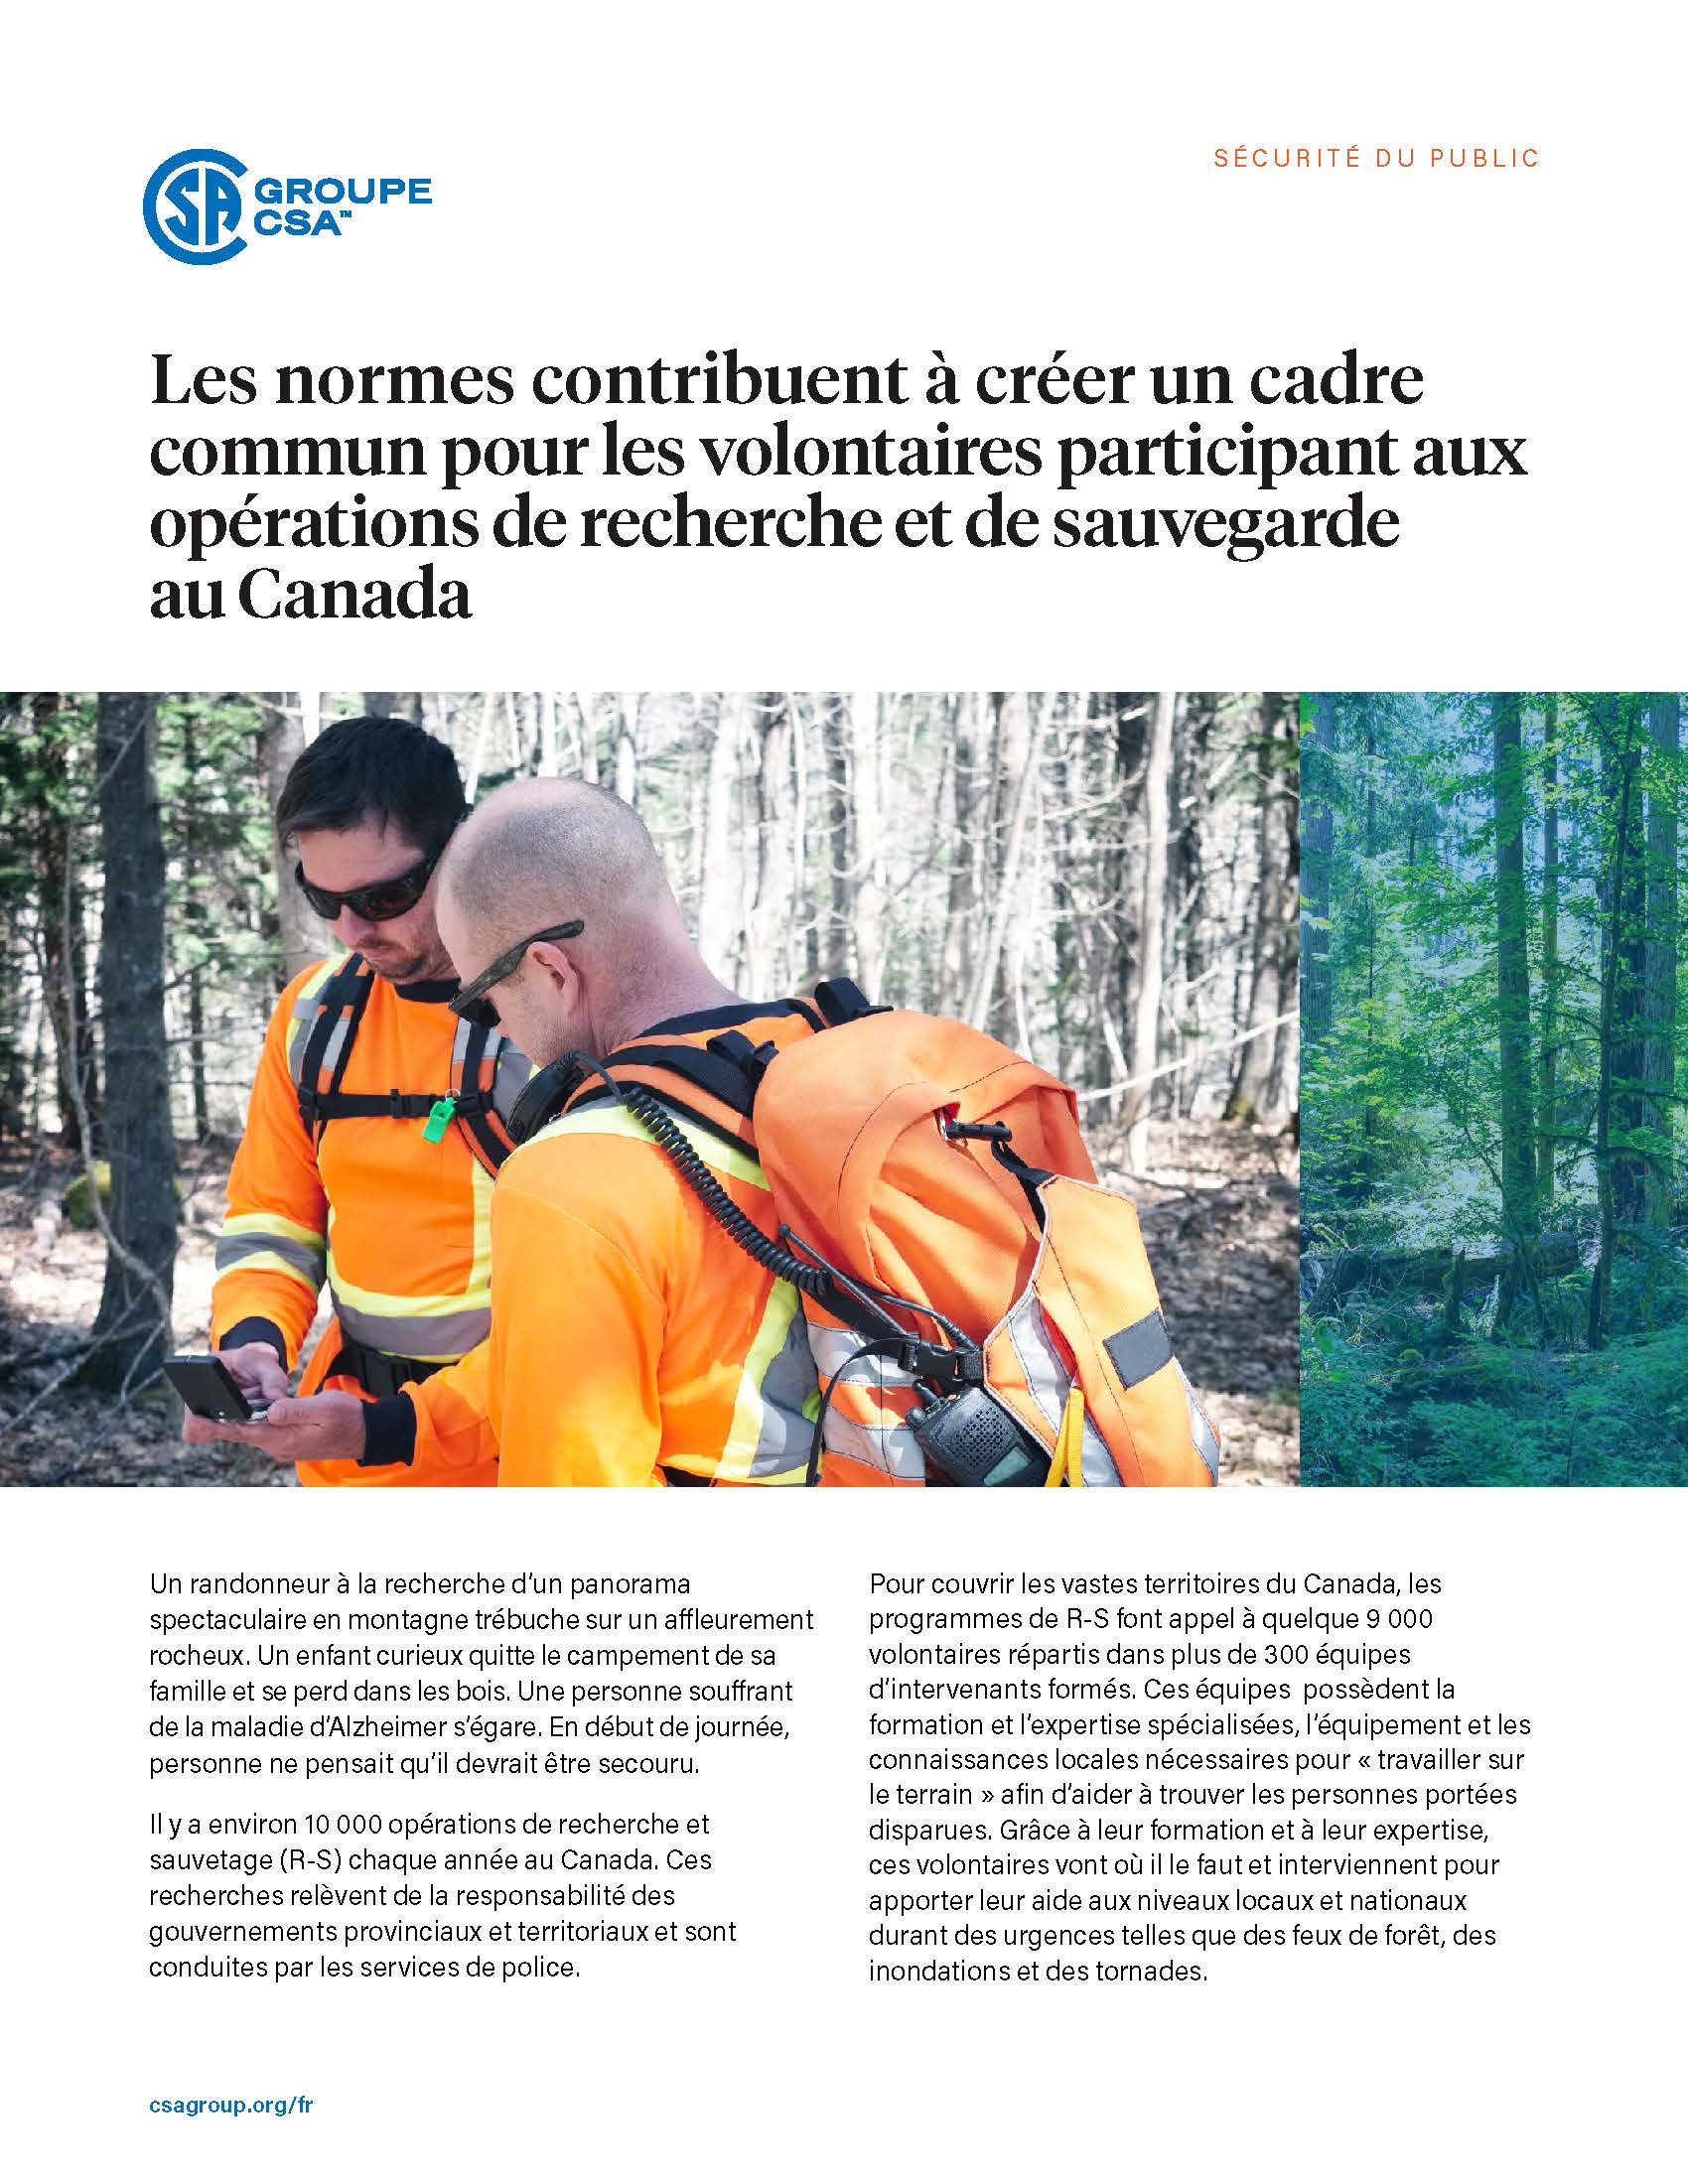 L'image sélectionnée. Les normes contribuent à créer un cadre commun pour les volontaires participant aux opérations de recherche et de sauvegarde au Canada.